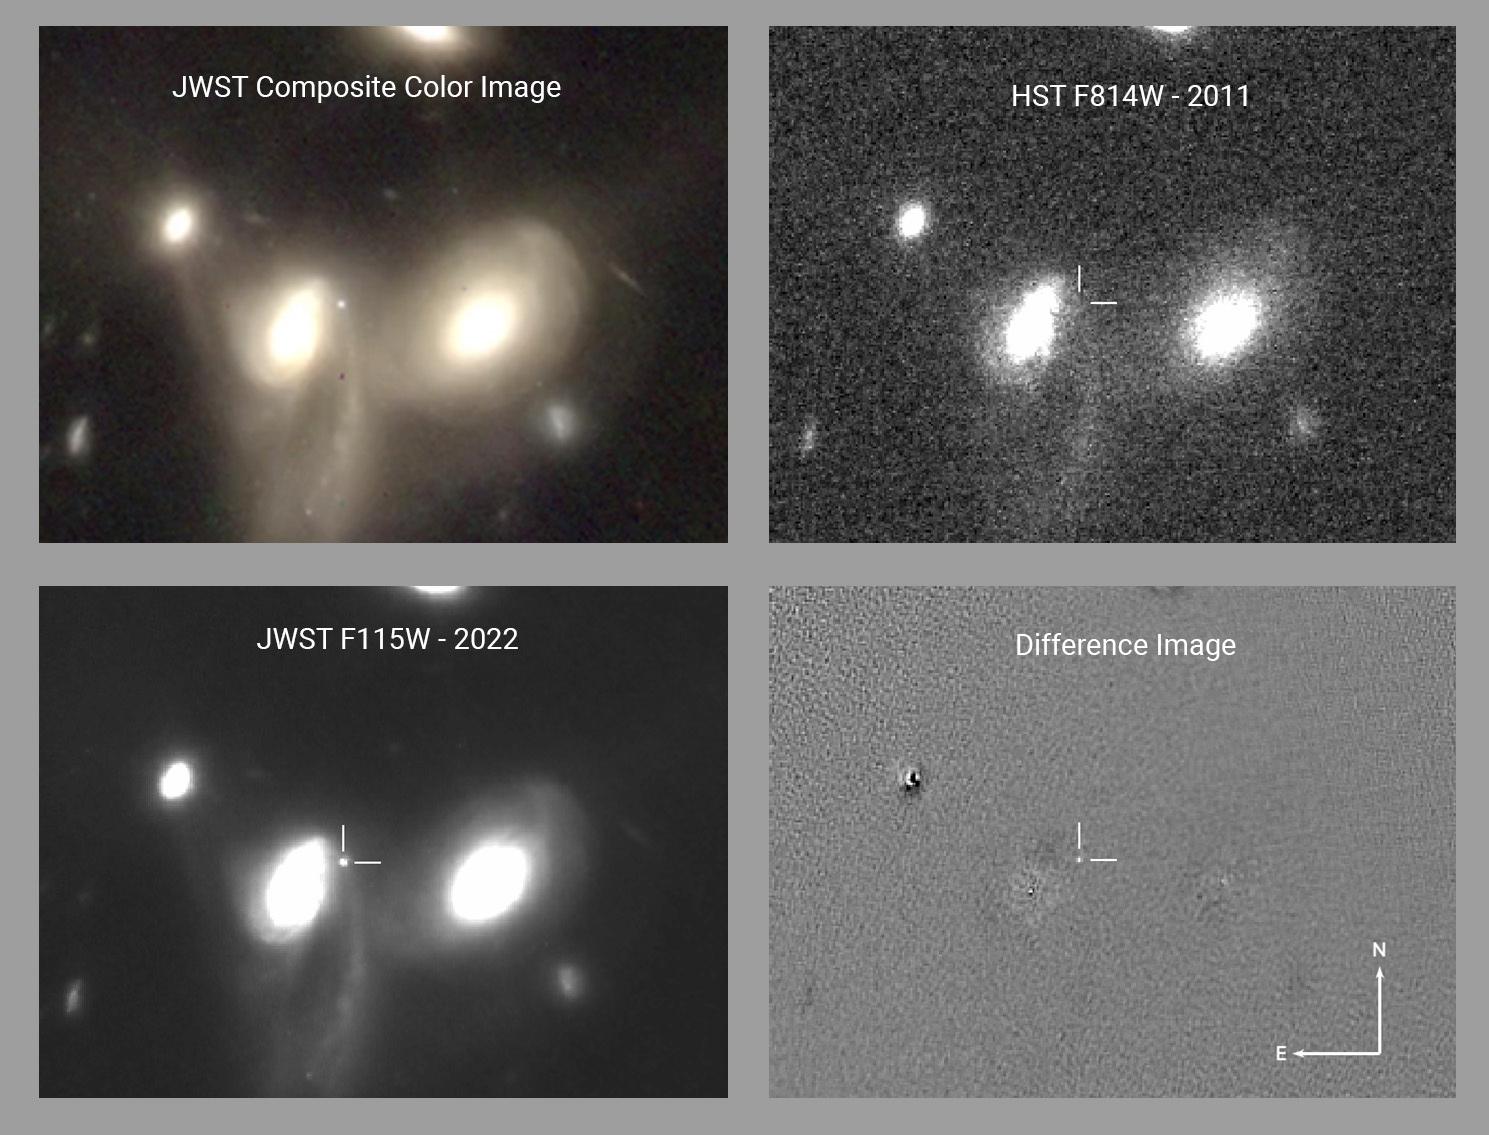 JWST First Supernova Discovered